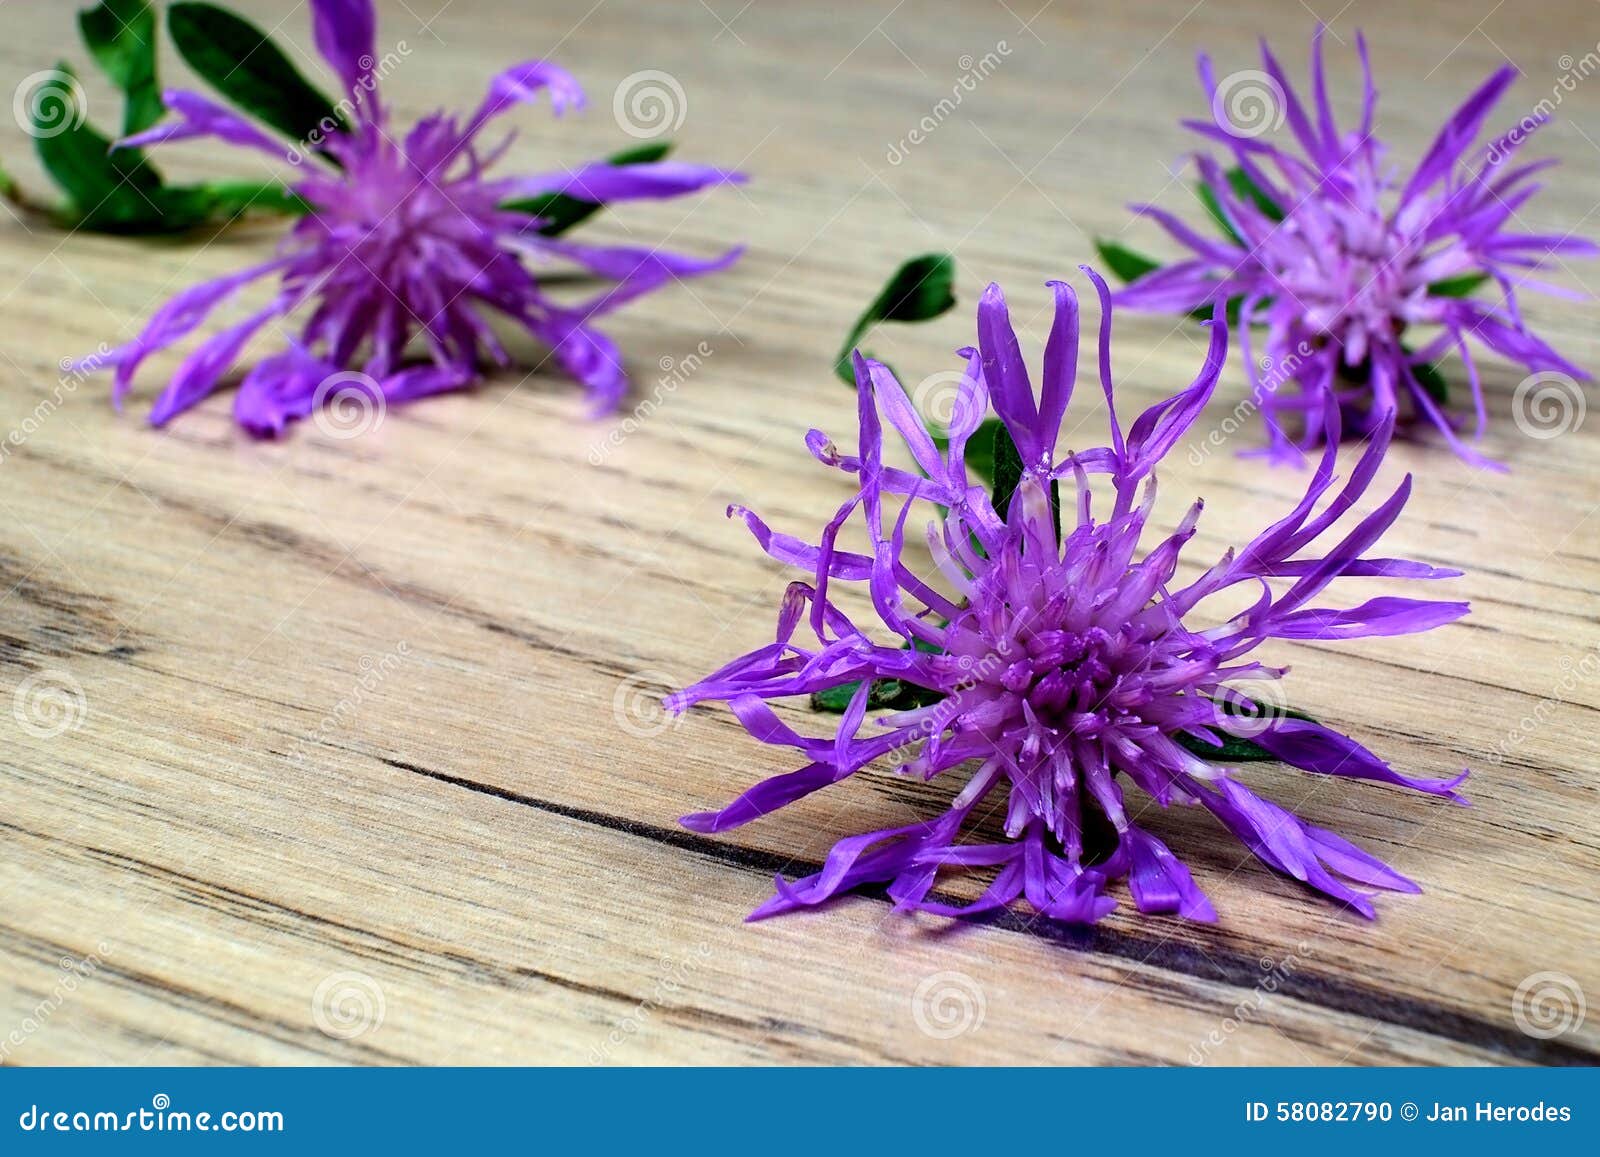 Fleurs Violettes De Chardon Photo stock - Image du table, fleurs: 58082790